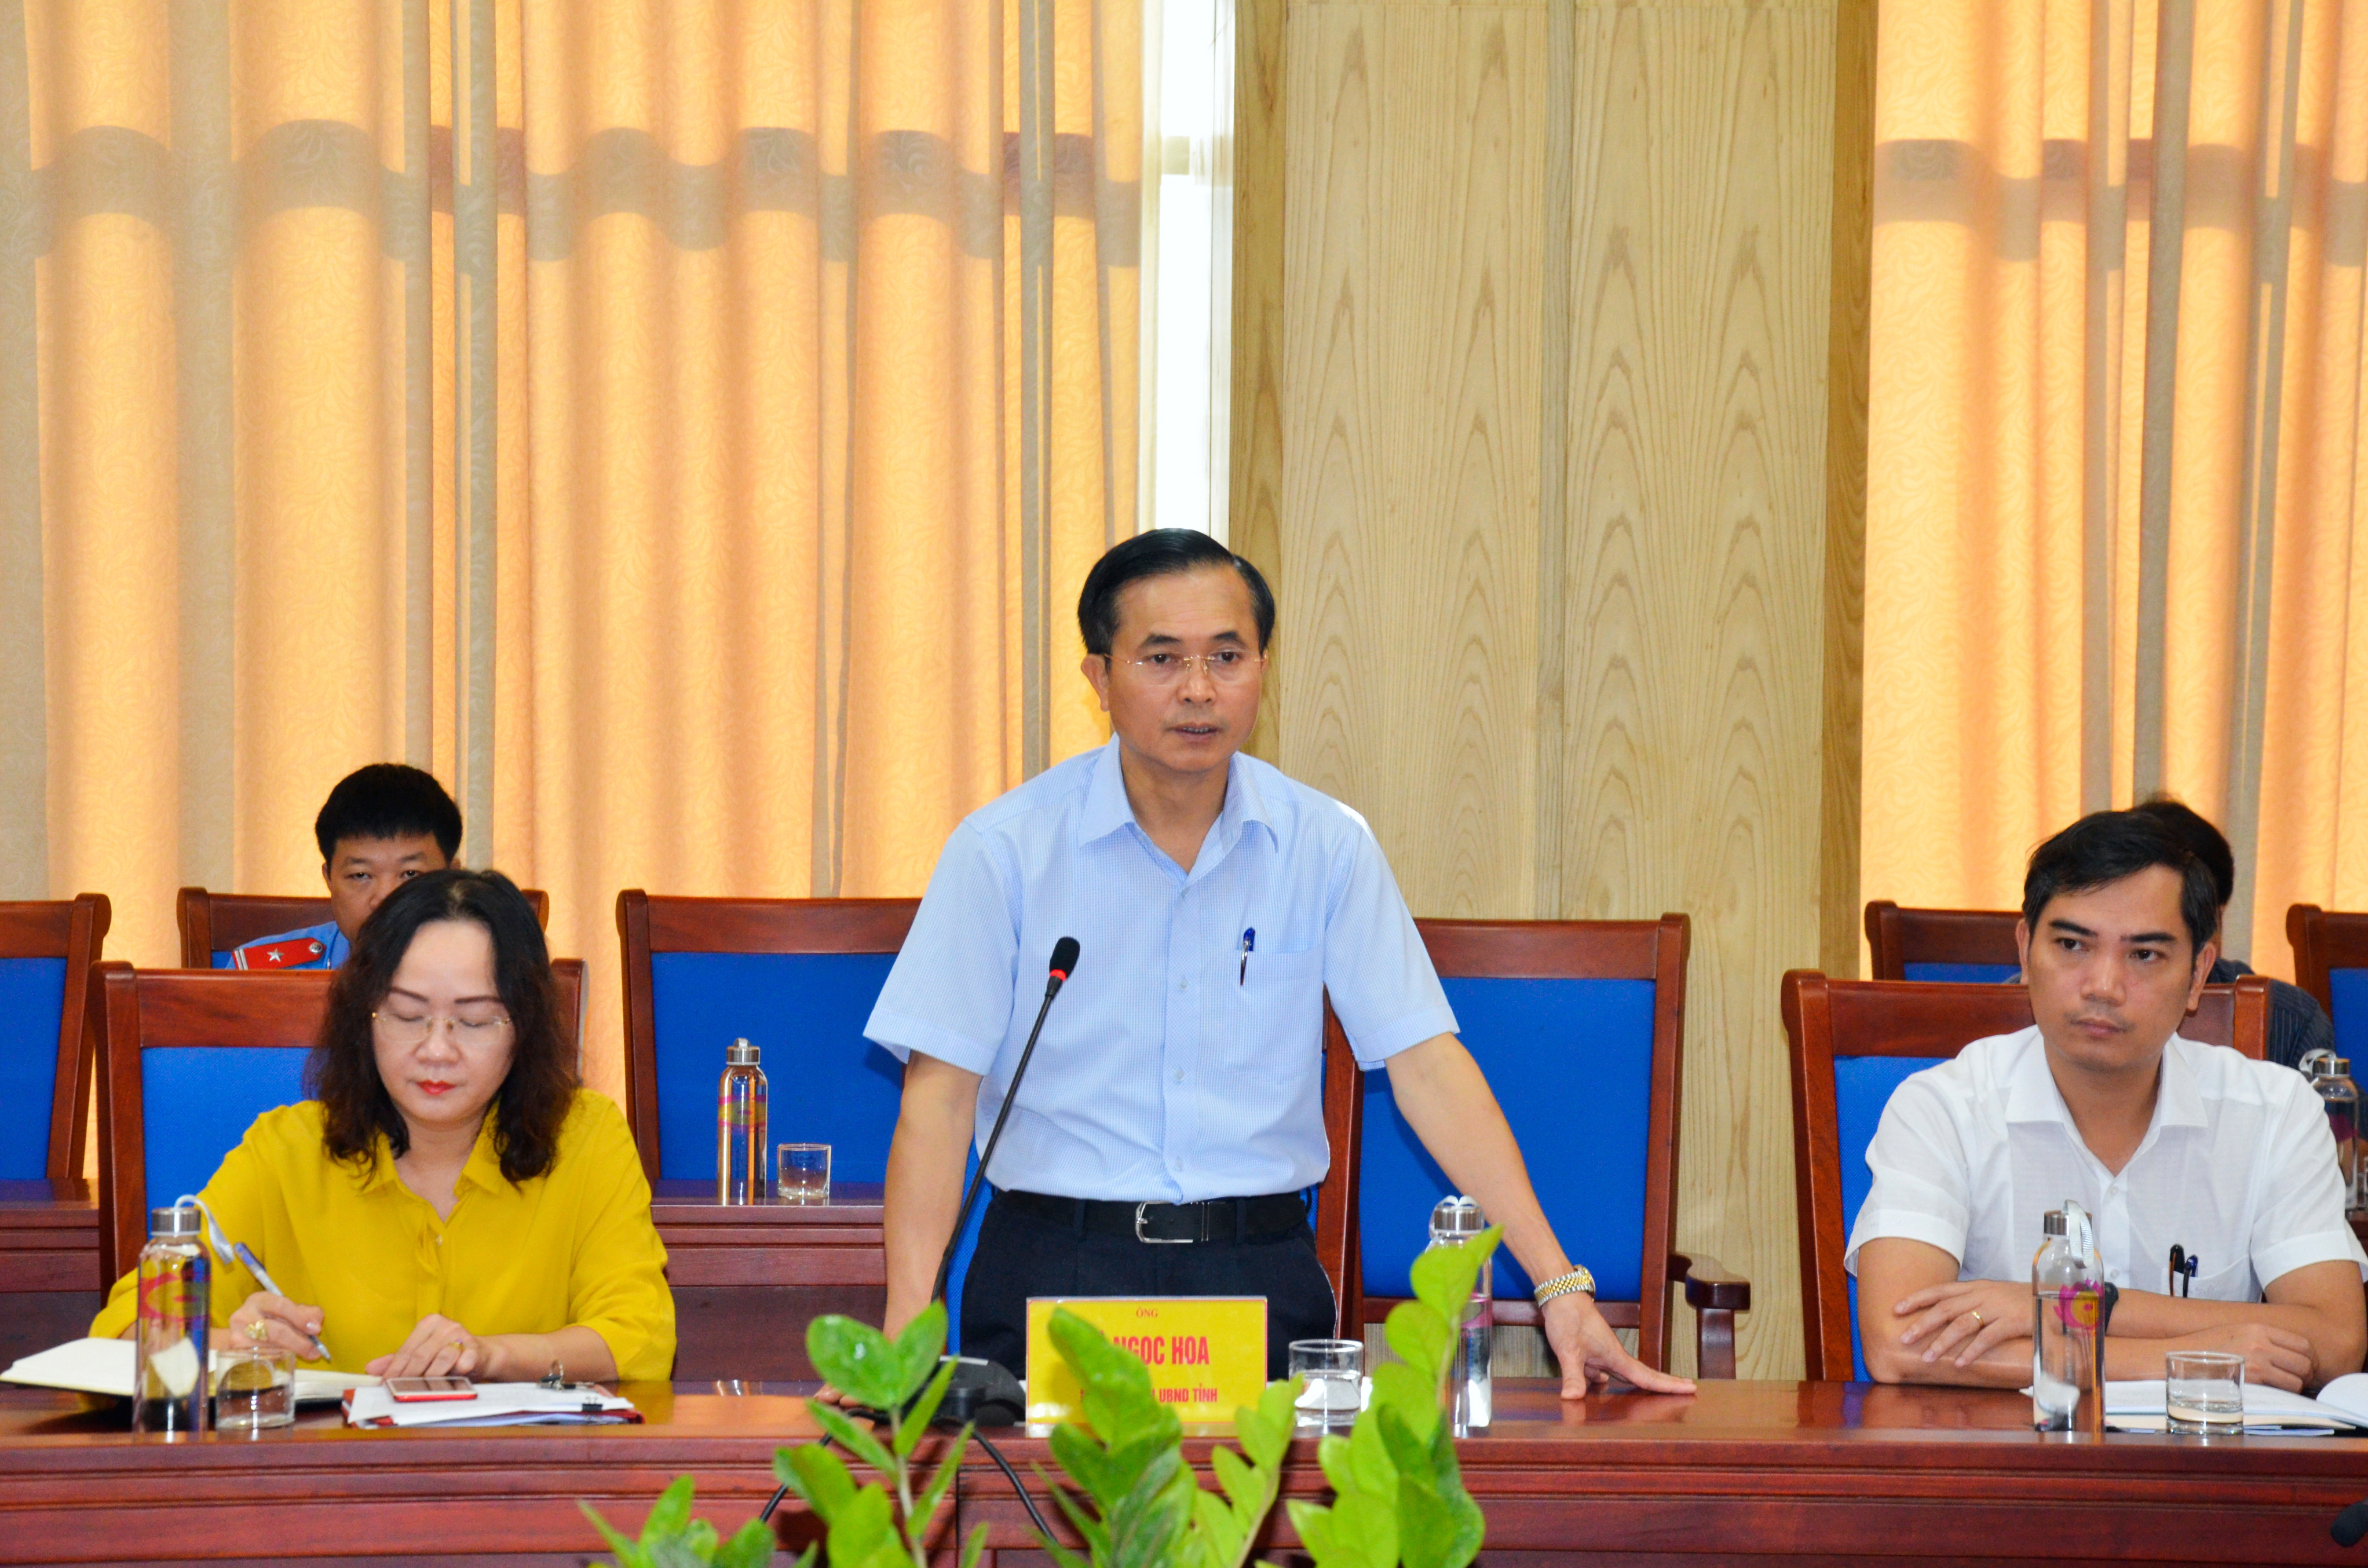 Phó Chủ tịch UBND tỉnh Lê Ngọc Hoa phát biểu